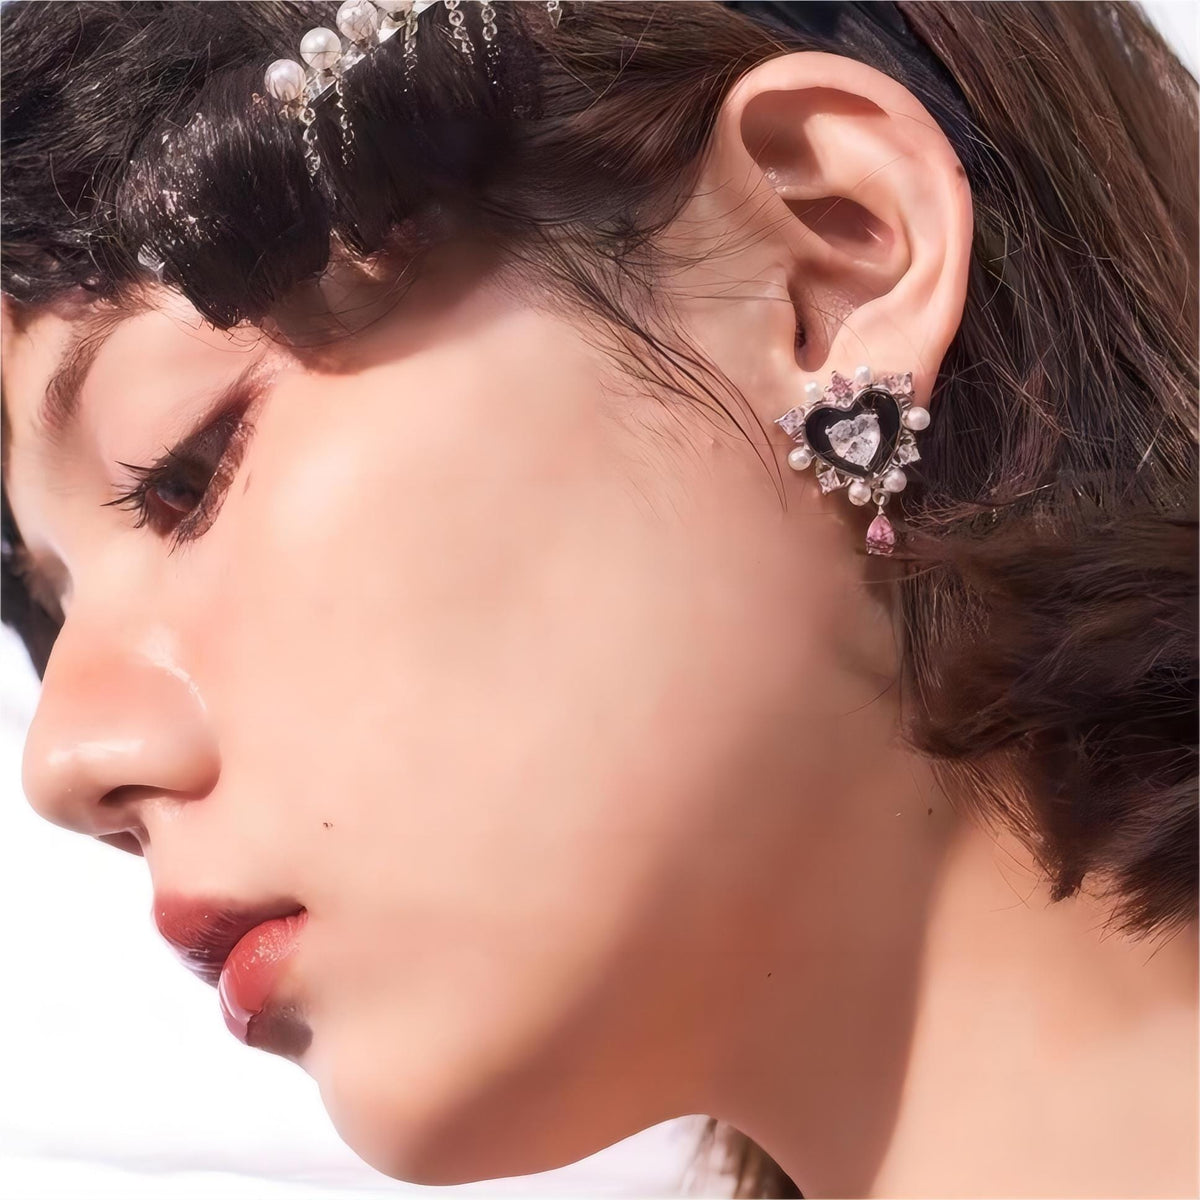 Leather Earrings - Brass Earrings - Minimalist Earrings - Dangle Earrings -  Nickel Free Earrings - Boho Chic Earrings - Post Earrings